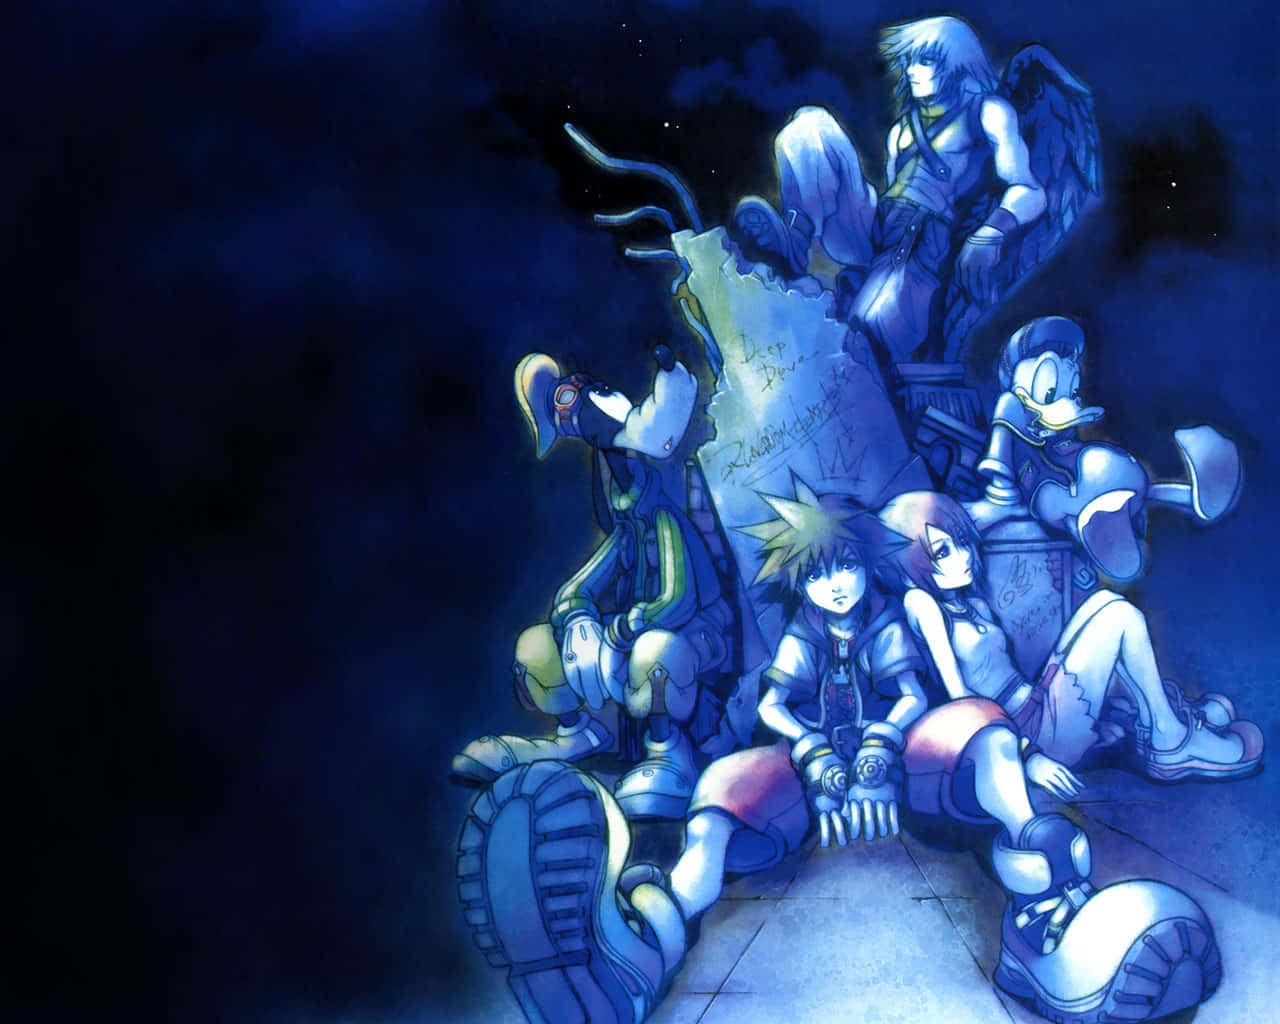 Sora,könig Mickey Und Riku Vereinen Sich Für Die Kingdom Hearts Saga.